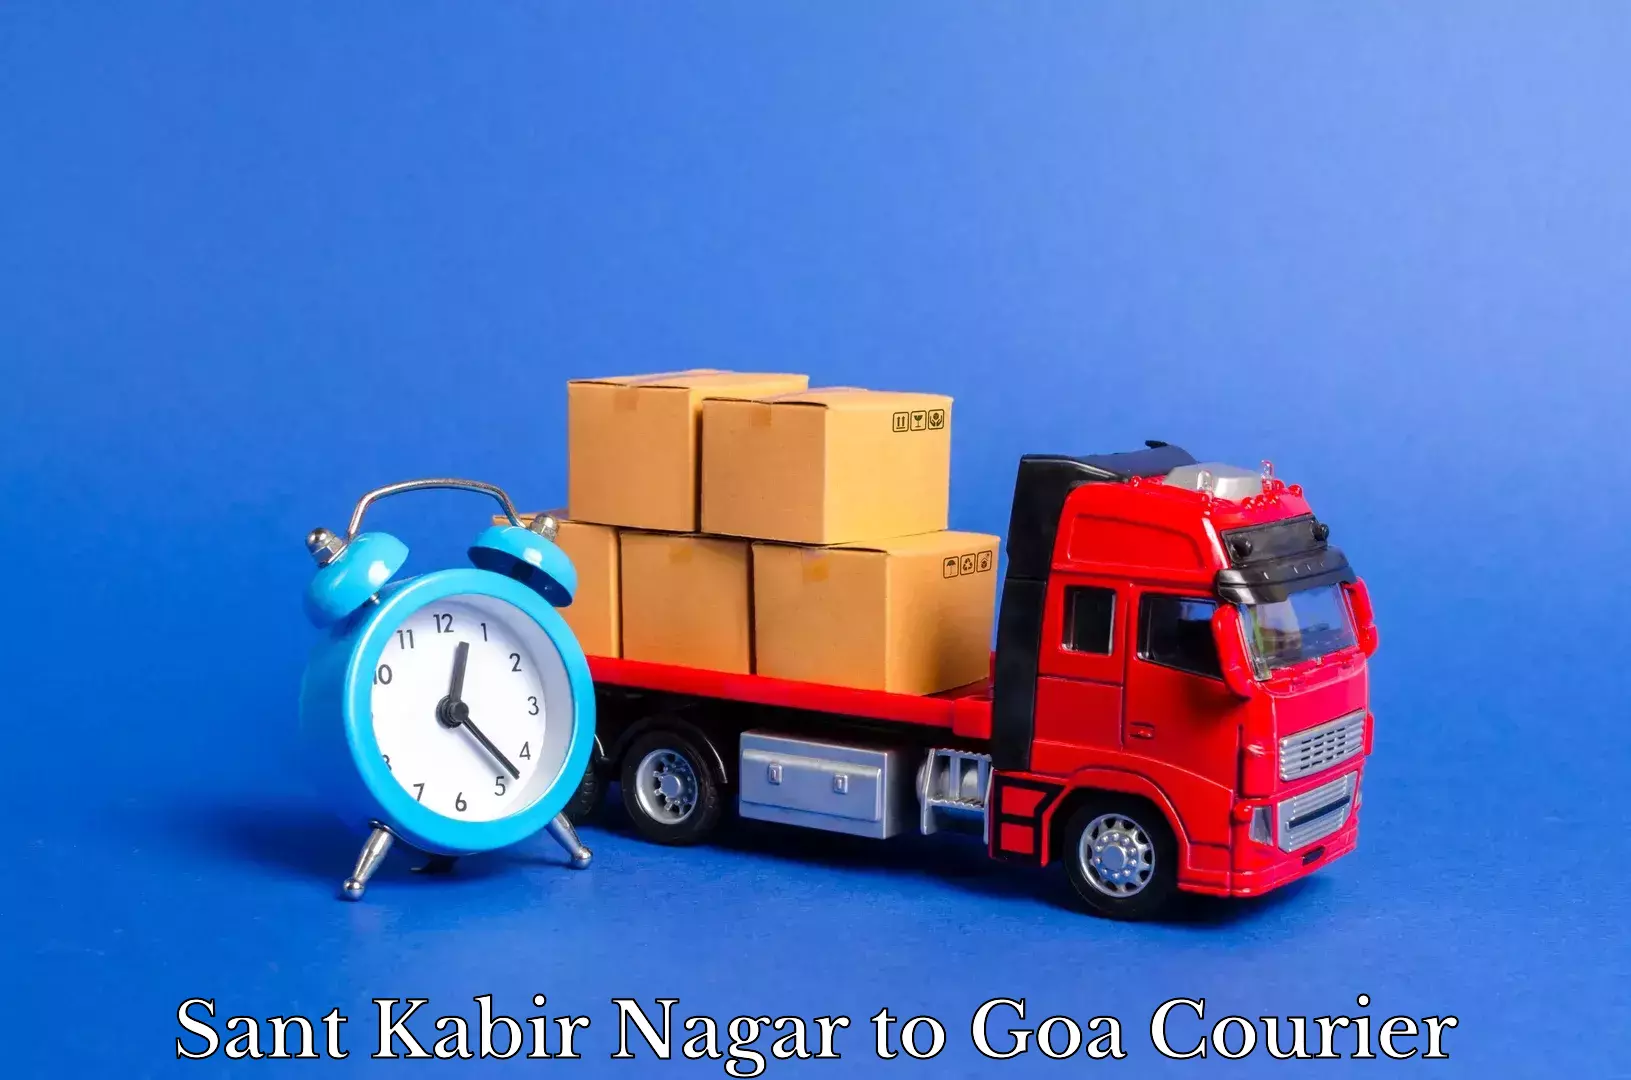 Efficient furniture movers Sant Kabir Nagar to Goa